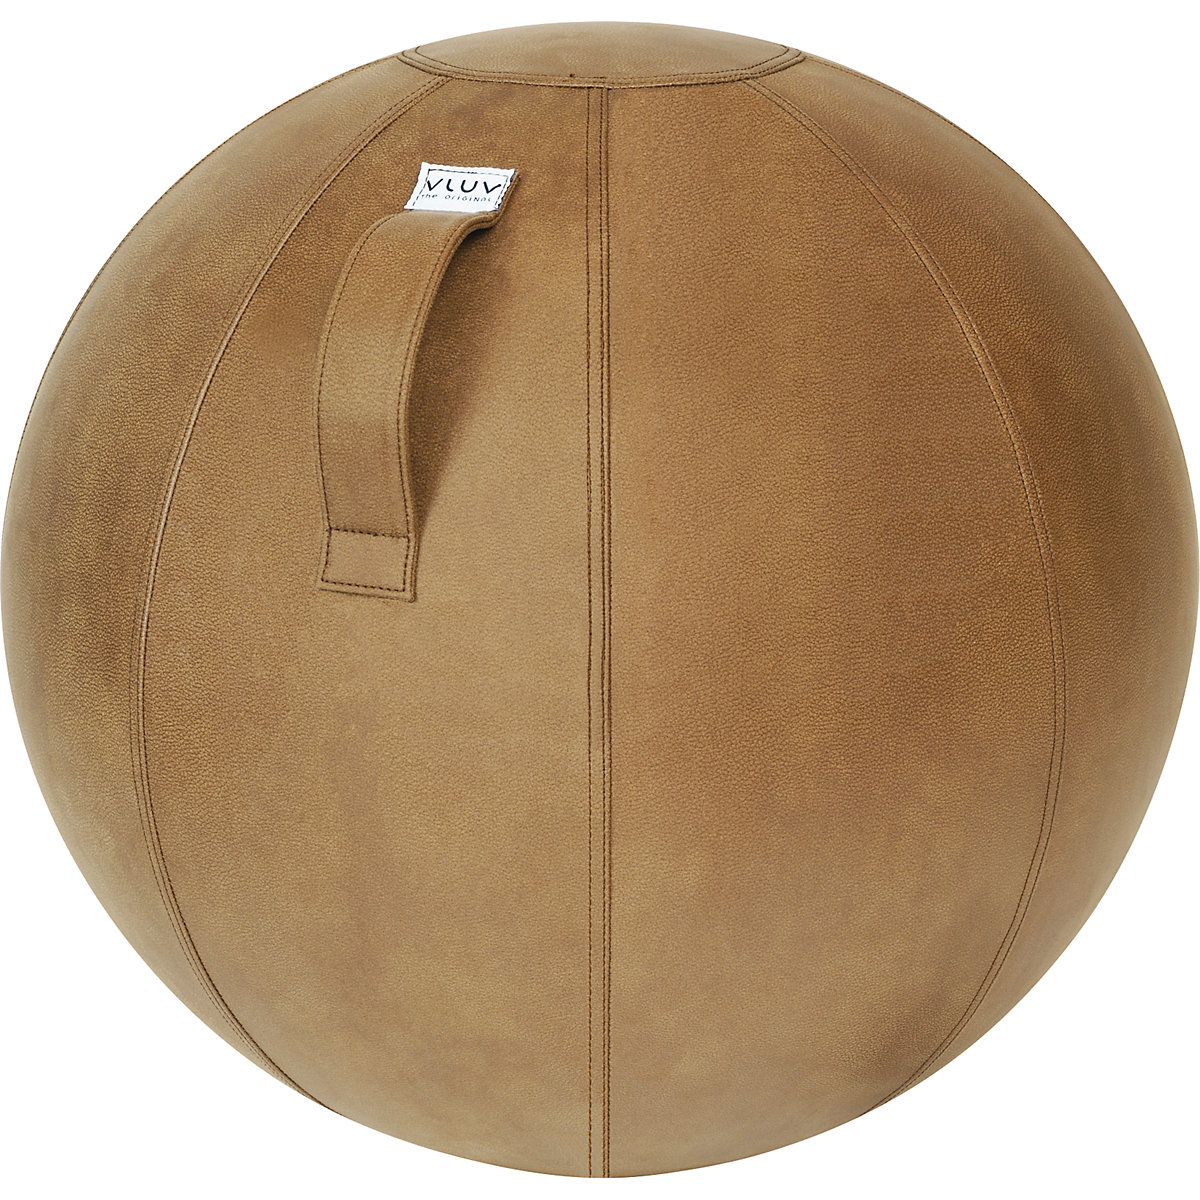 VEEL Swiss ball – VLUV, microfibre vinyl, 600 – 650 mm, cognac